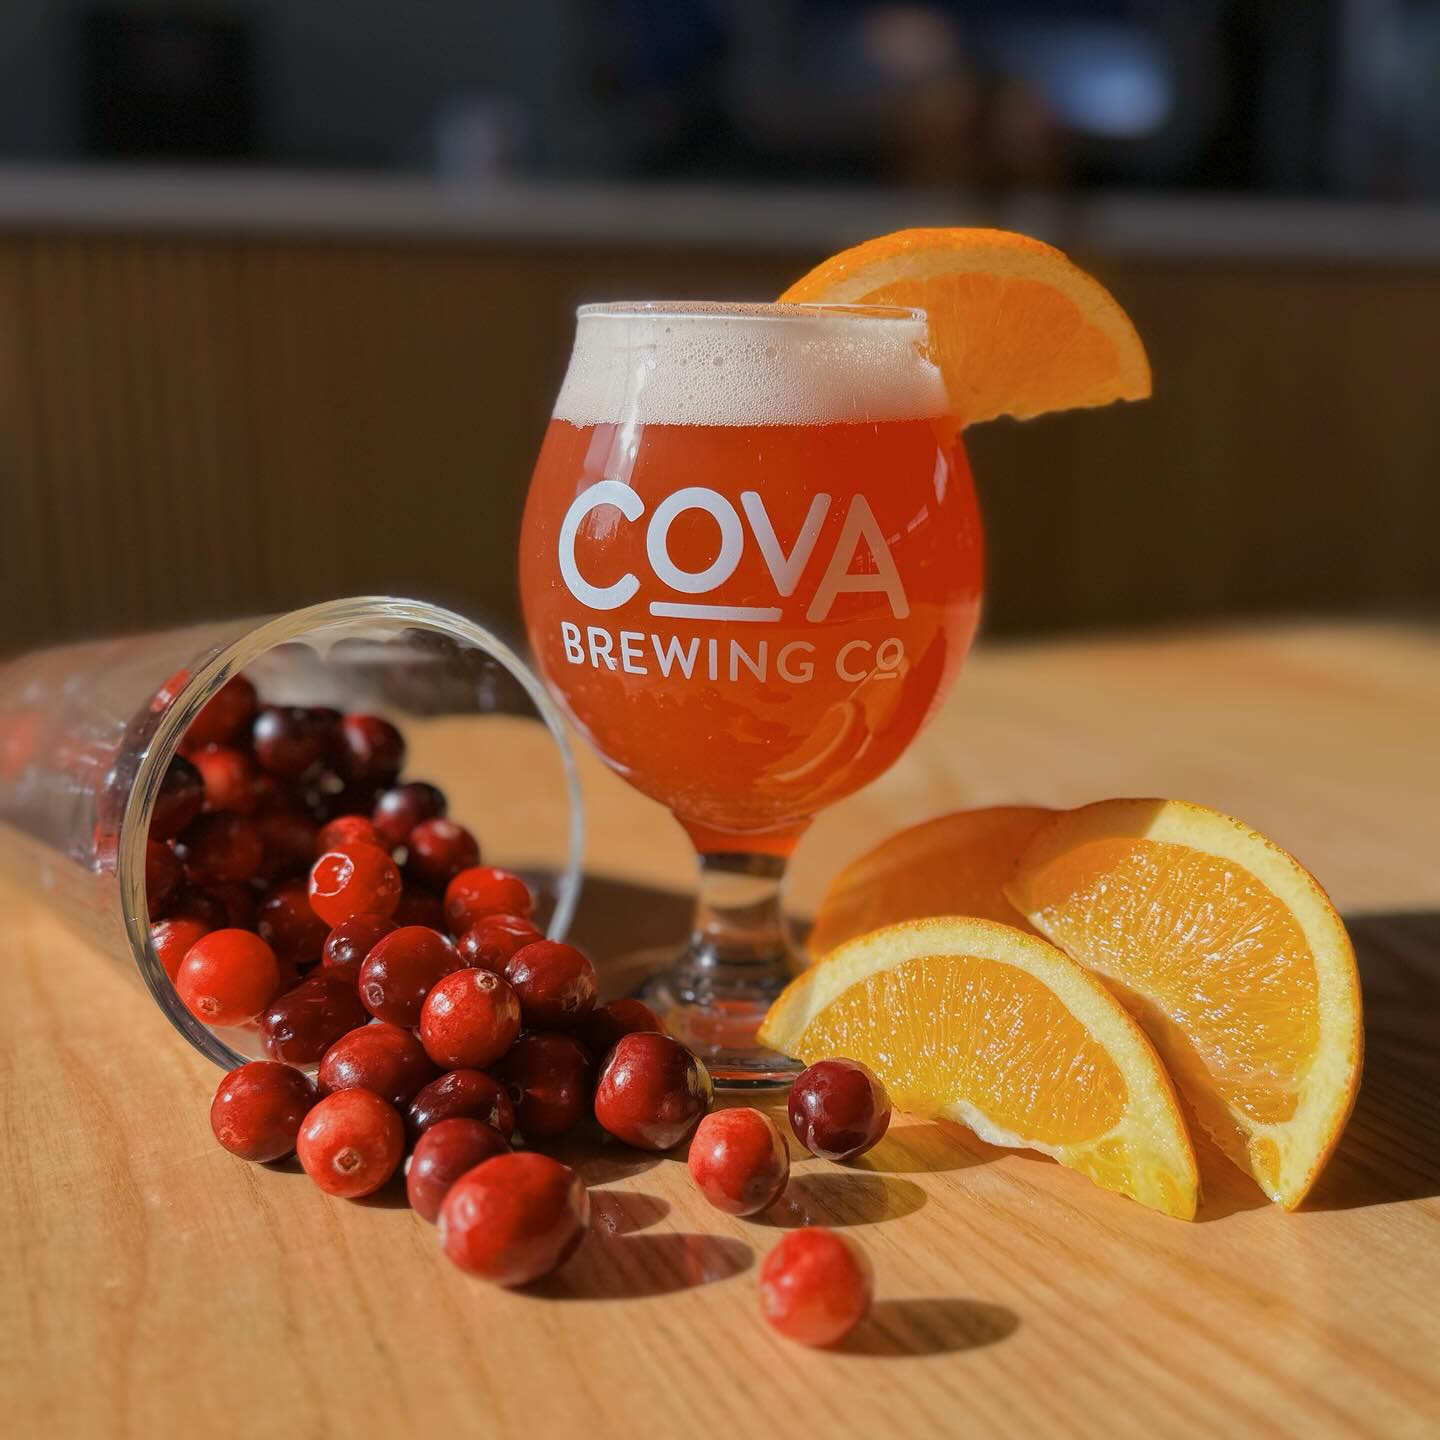 COVA Brewing Company